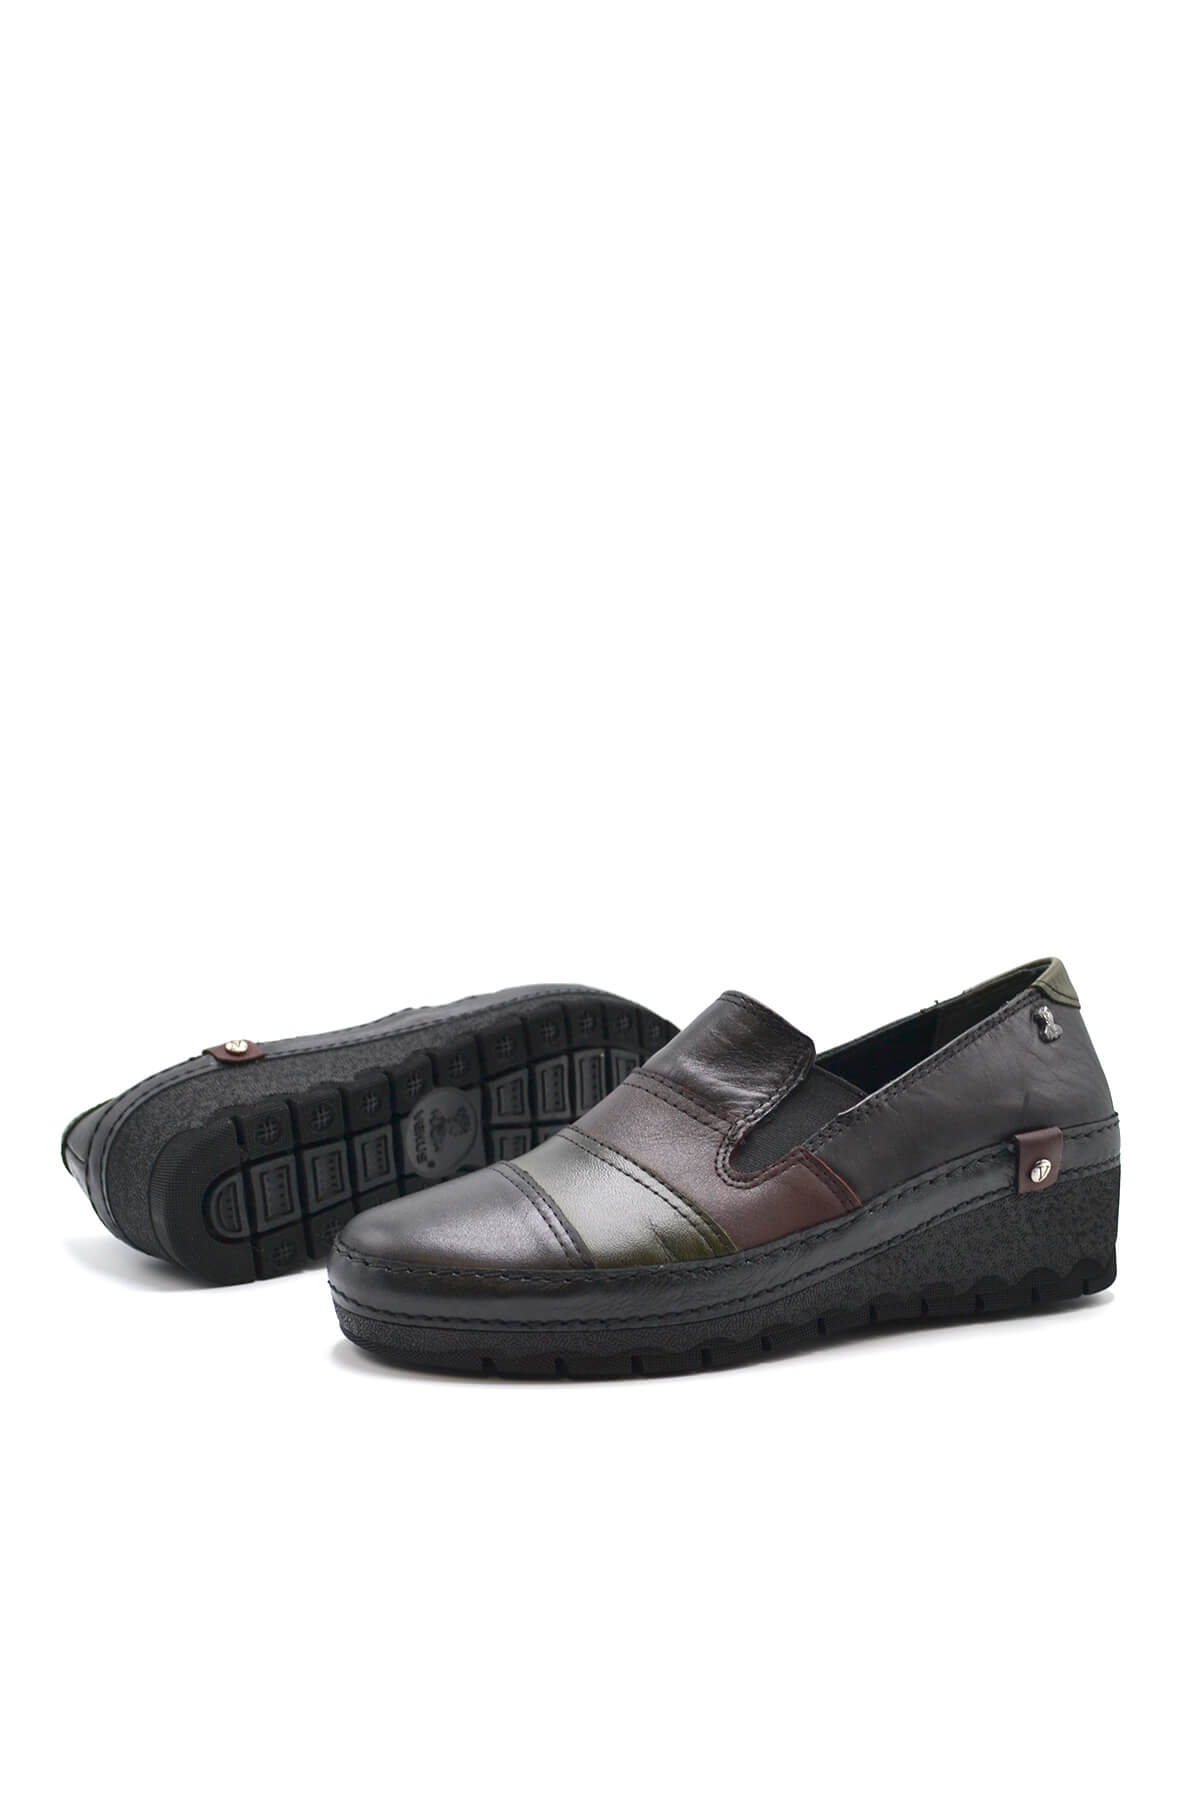 Kadın Comfort Deri Ayakkabı Siyah 2213507K